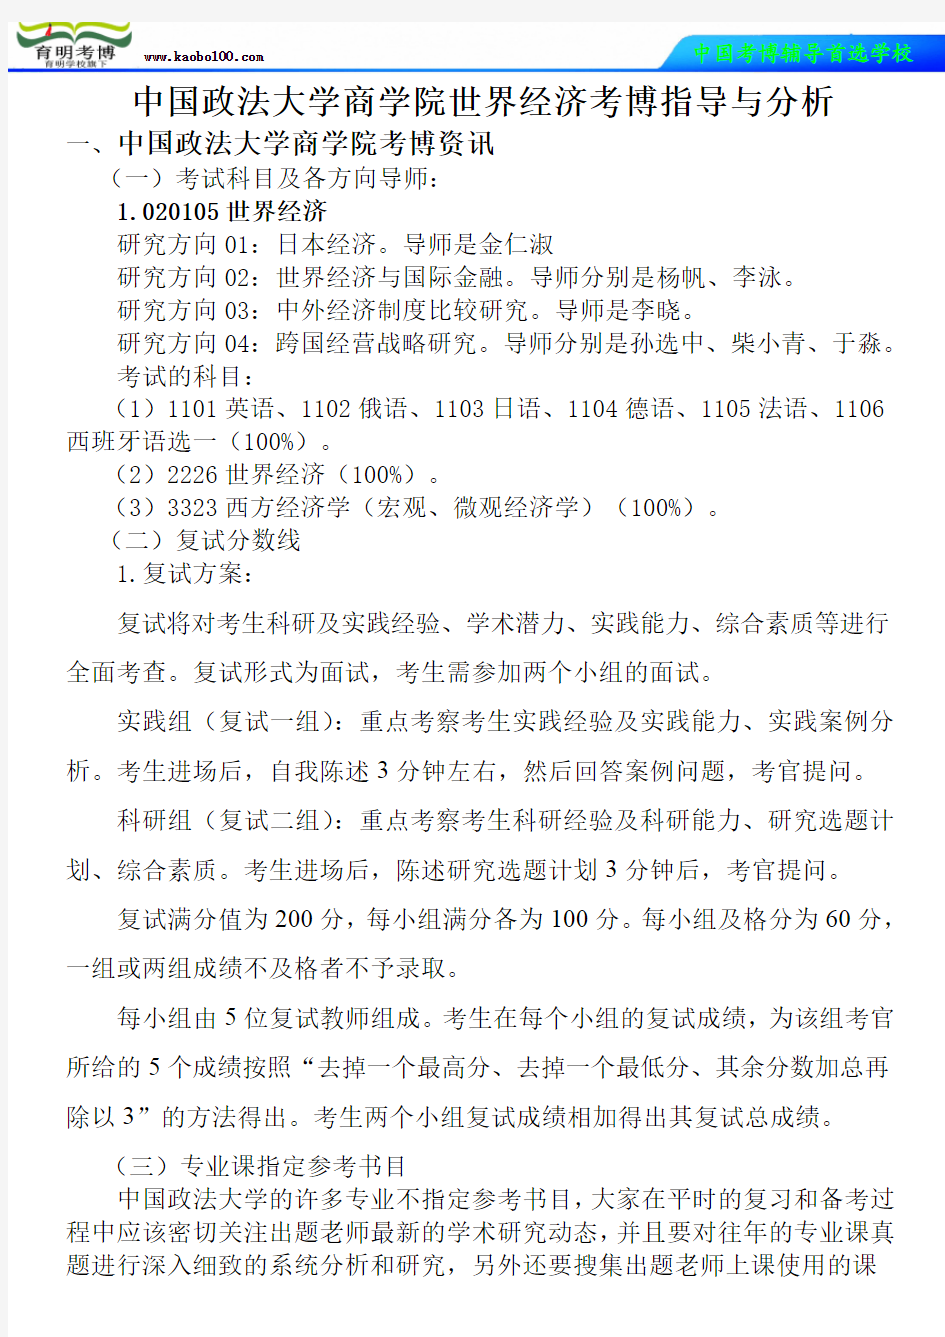 中国政法大学商学院世界经济考博真题-参考书-分数线-分析资料-复习方法-育明考博